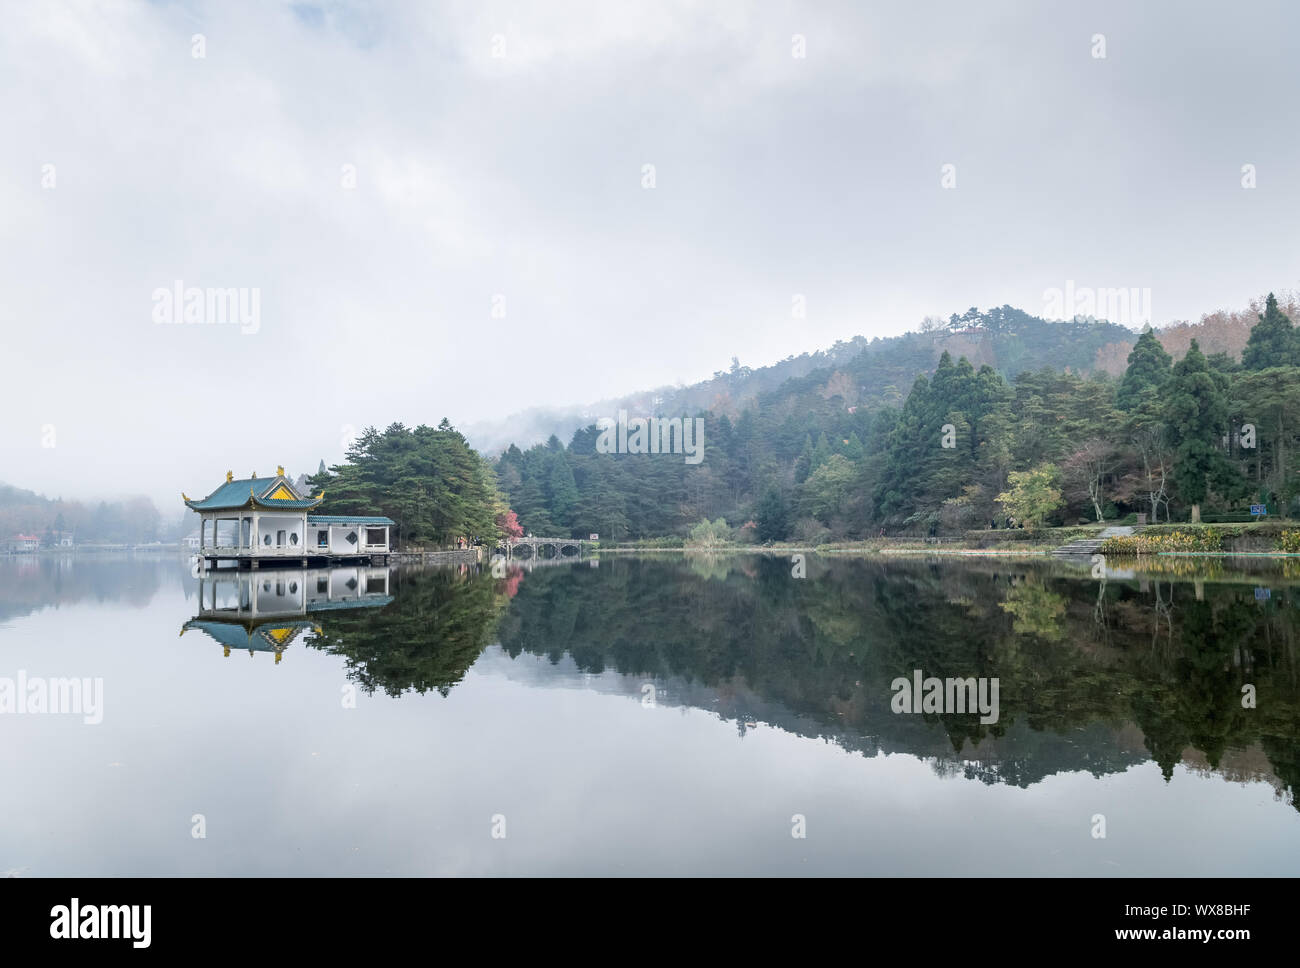 lushan landscape of traditional pavilion on lake Stock Photo